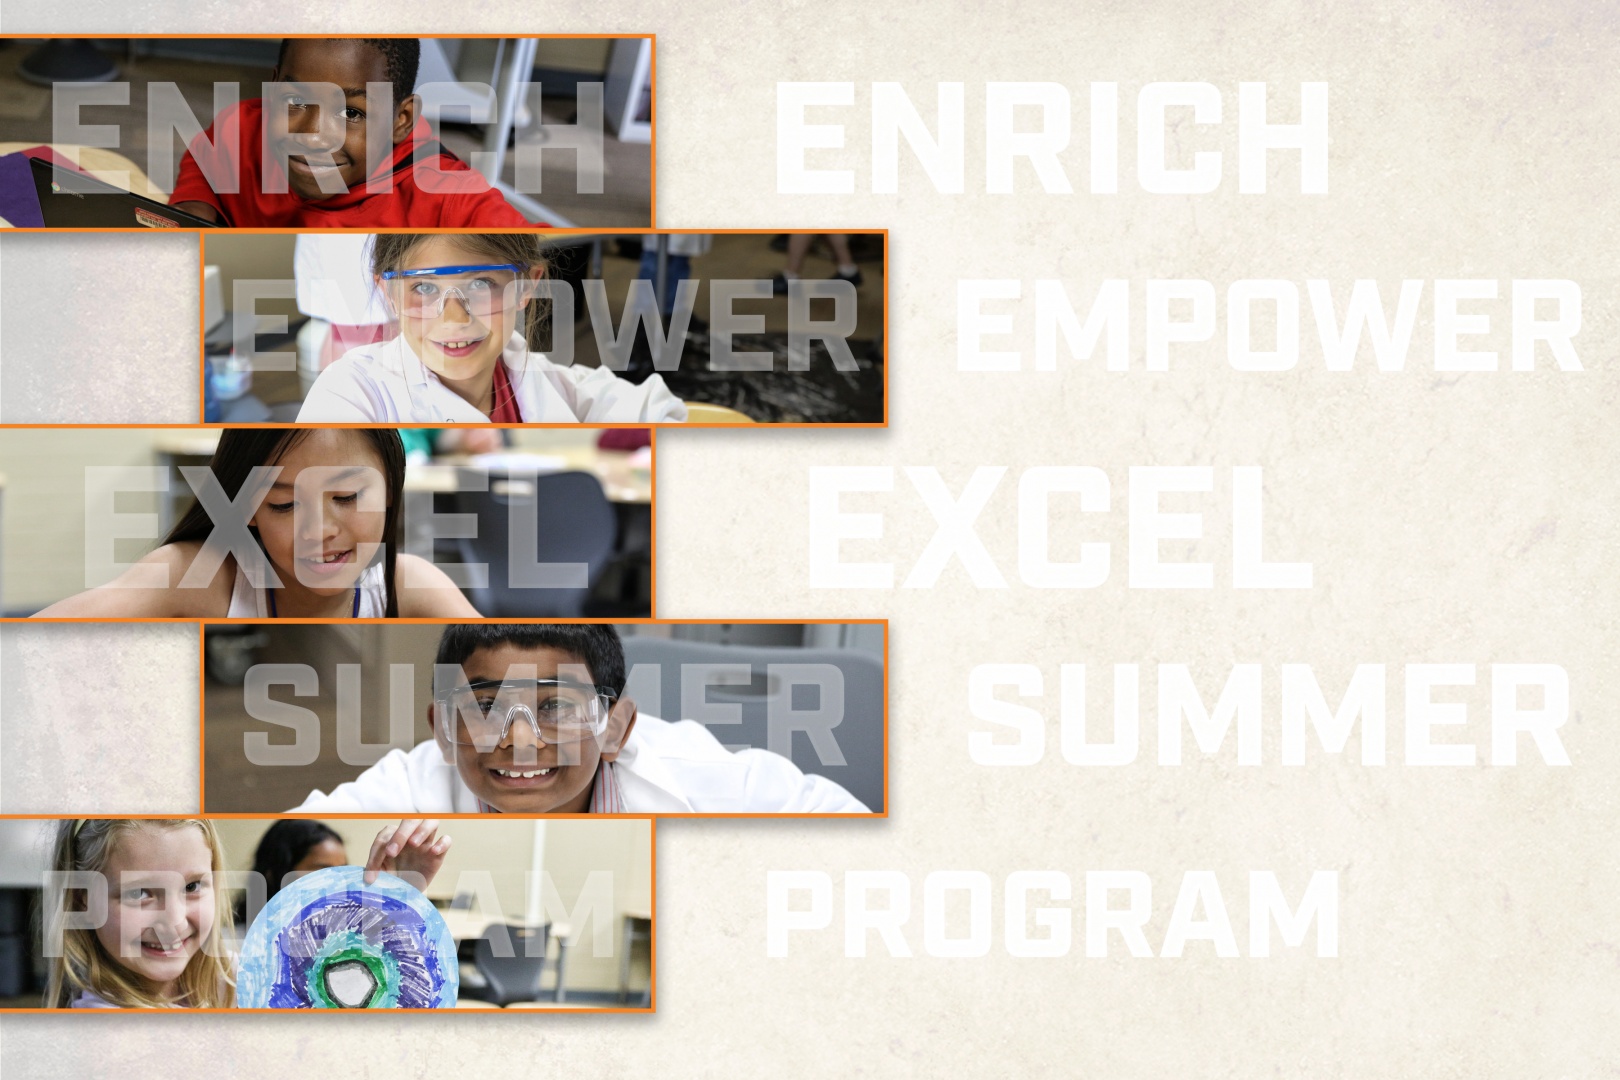 Enrich Empower Excel Summer Program